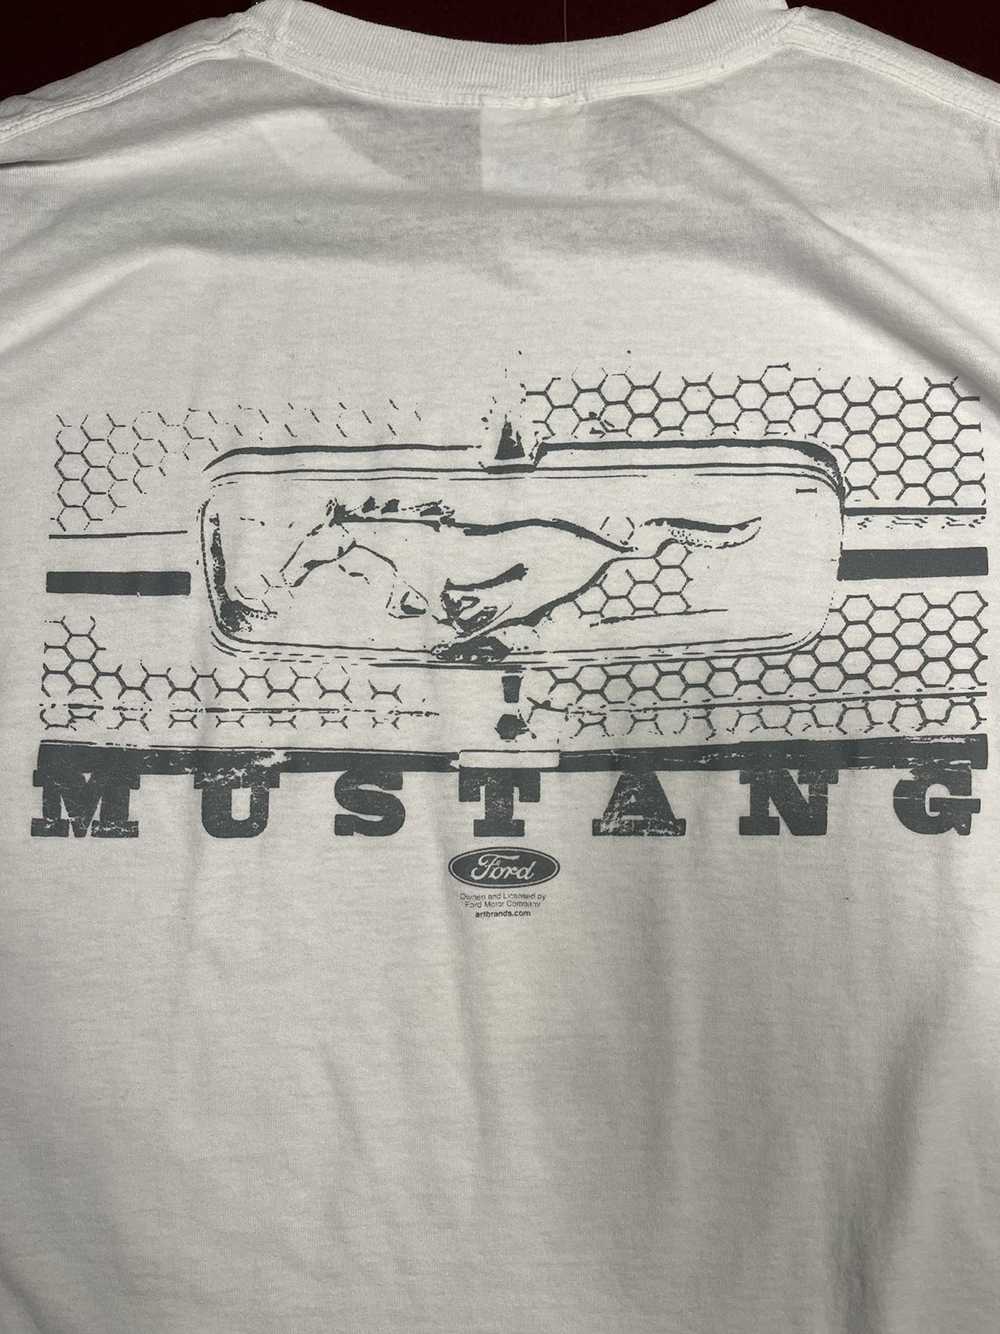 Ford × Mustang × Vintage Ford mustang vintage tee - image 5